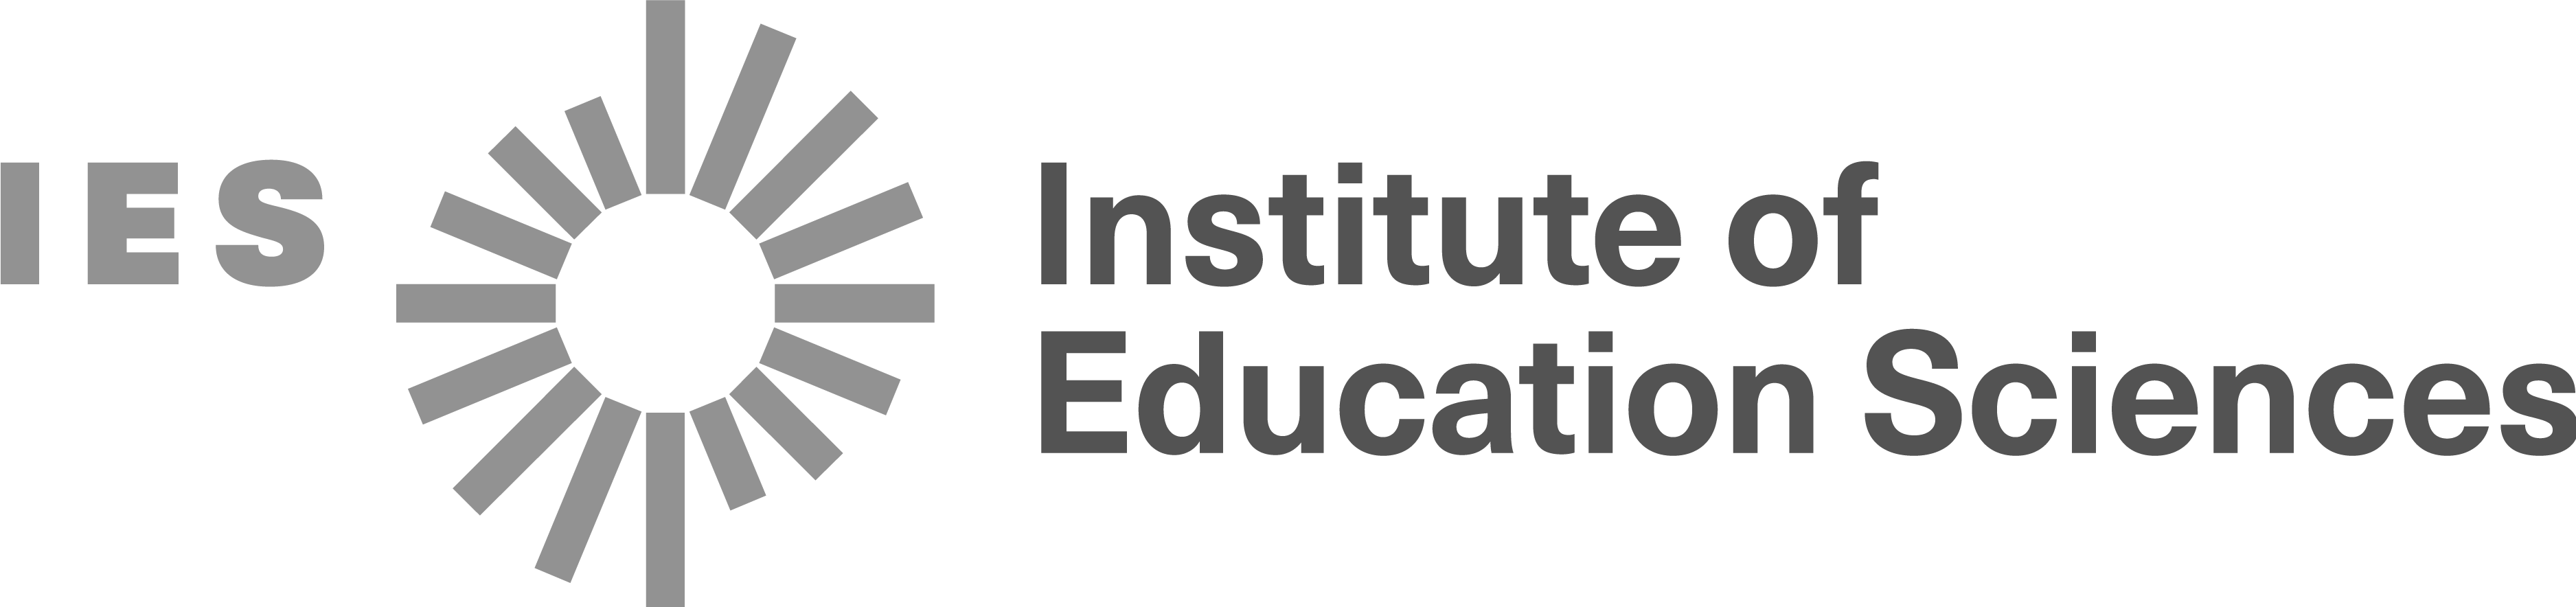 Institute of Education Sciences